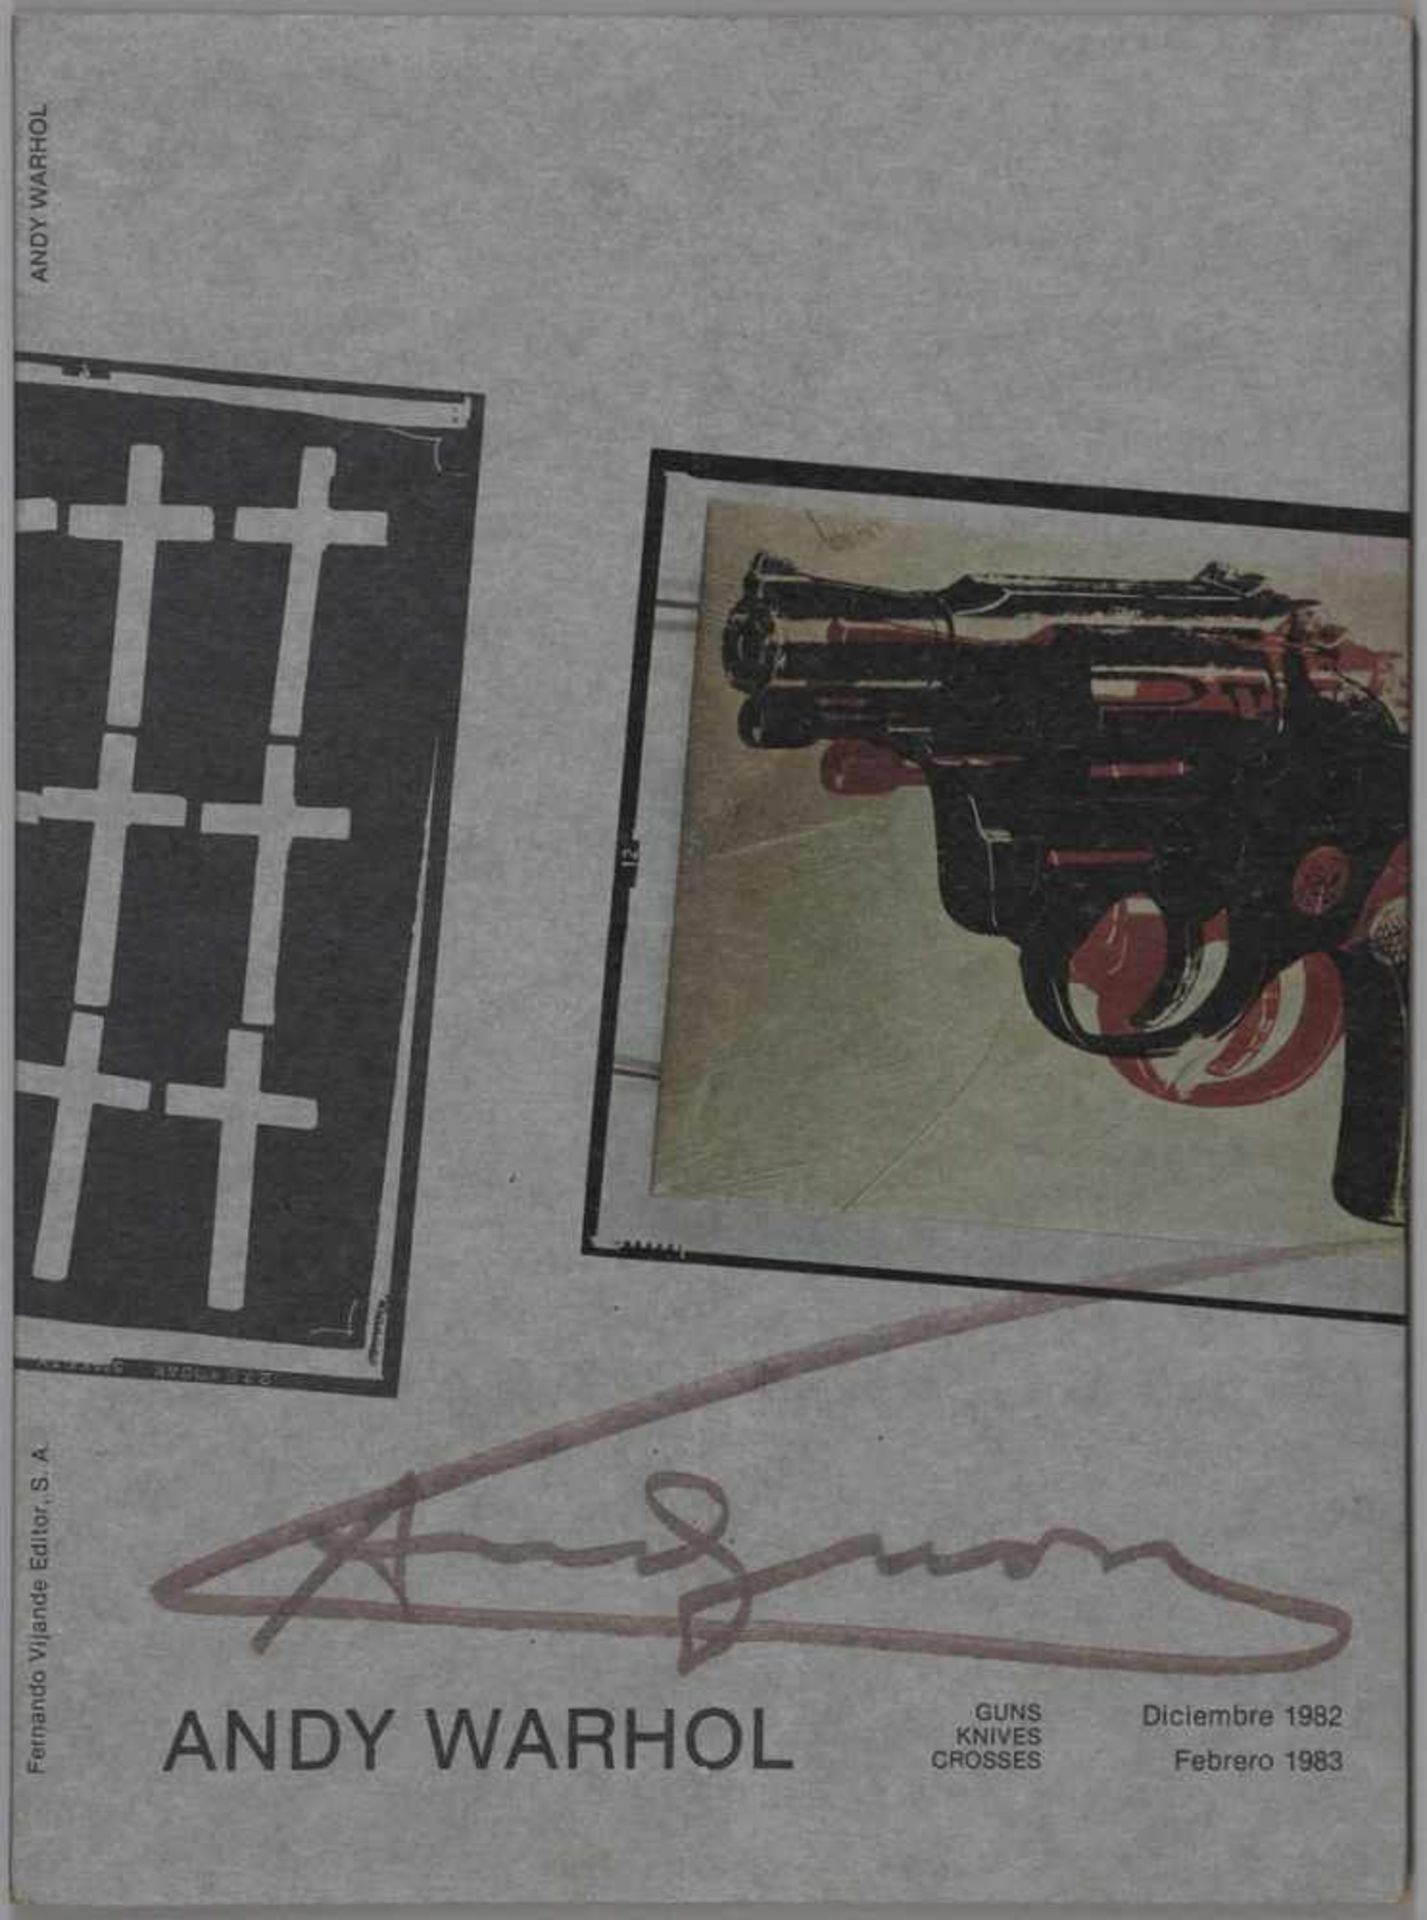 Andy Warhol1928 Pittsburgh - 1987 New York - "Pistolas" - Farboffset (Ausstellungskarte der - Image 2 of 3